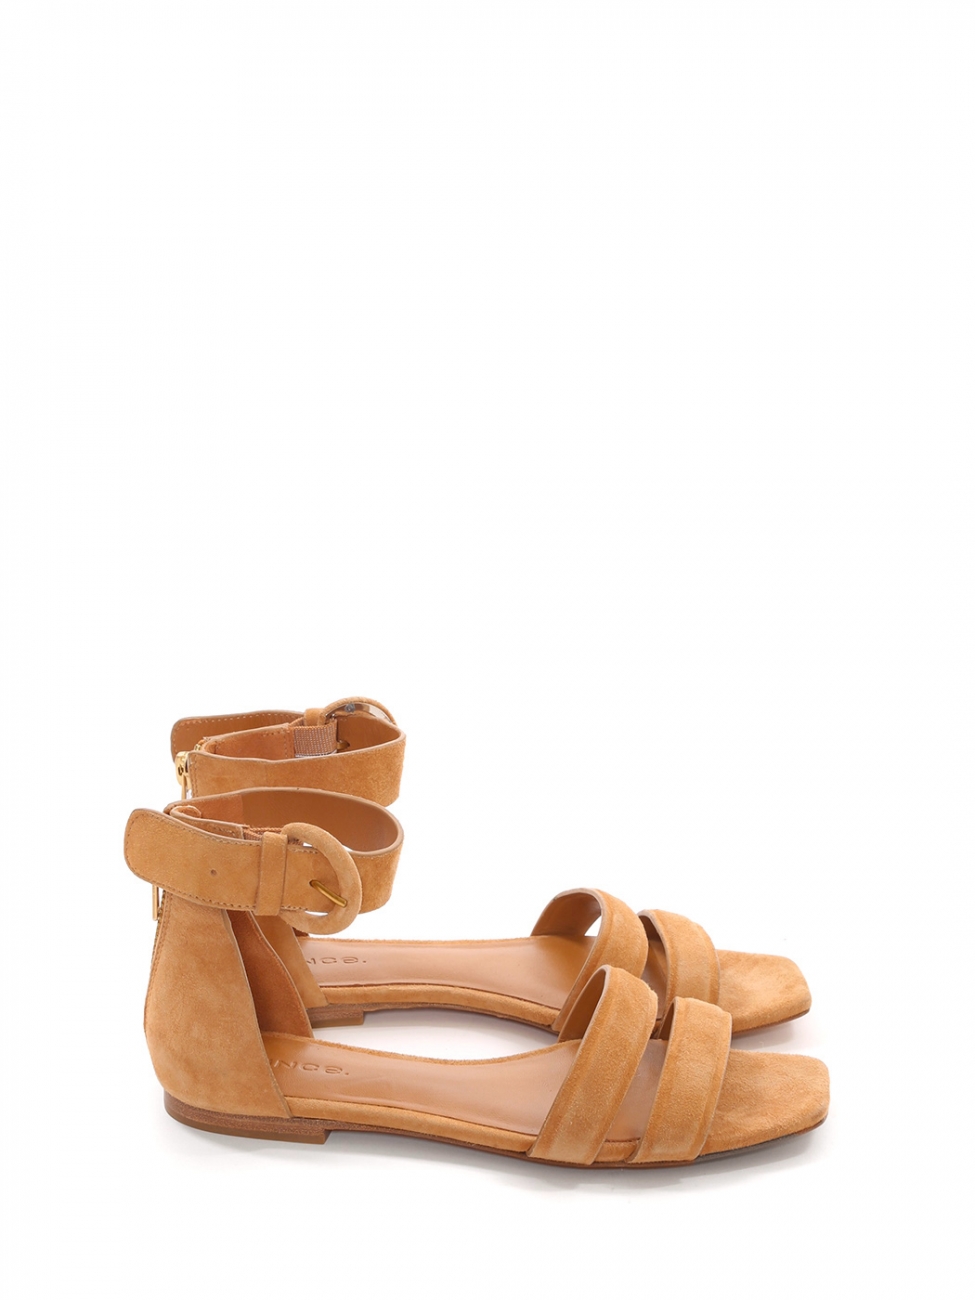 Miz Mooz Shoes - #MyMizMooz 🧡 The stunning @leekajai rocking her bright  fuchsia Miz Mooz Medina Sandals! #shoes #sandals #mizmooz #spring #summer  #medina69209 https://miz-mooz.com/medina.html | Facebook